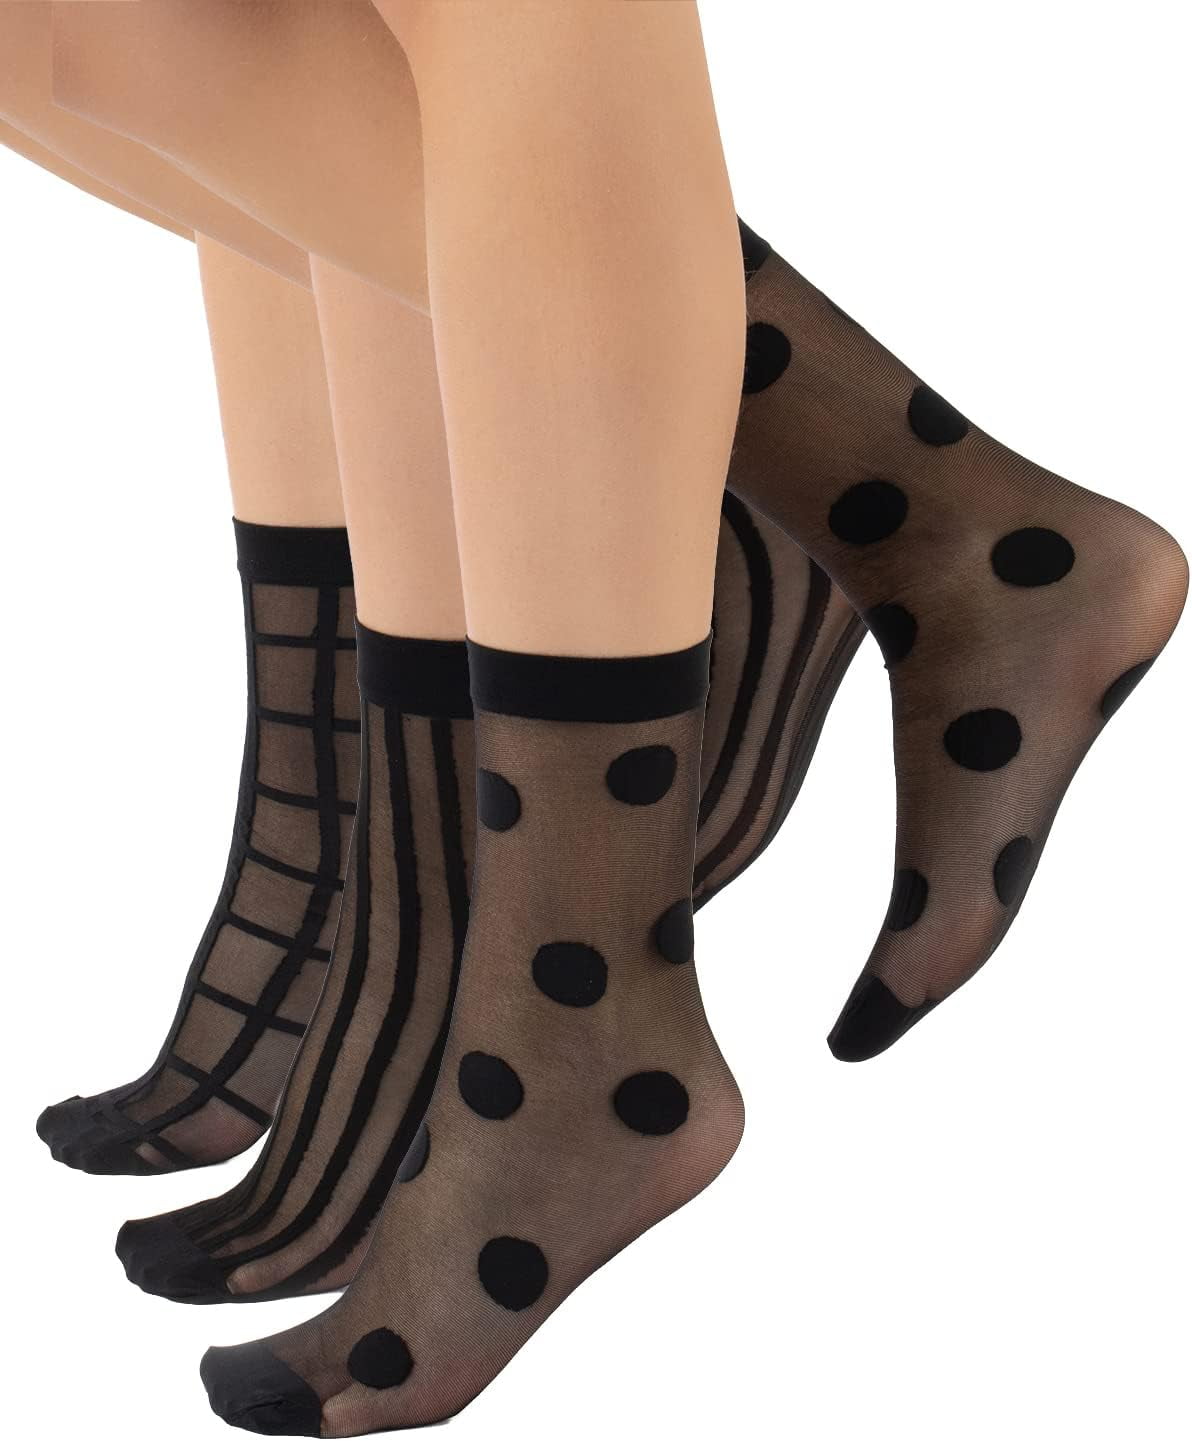 MANZI 12 Pairs Women's Ankle High Sheer Socks